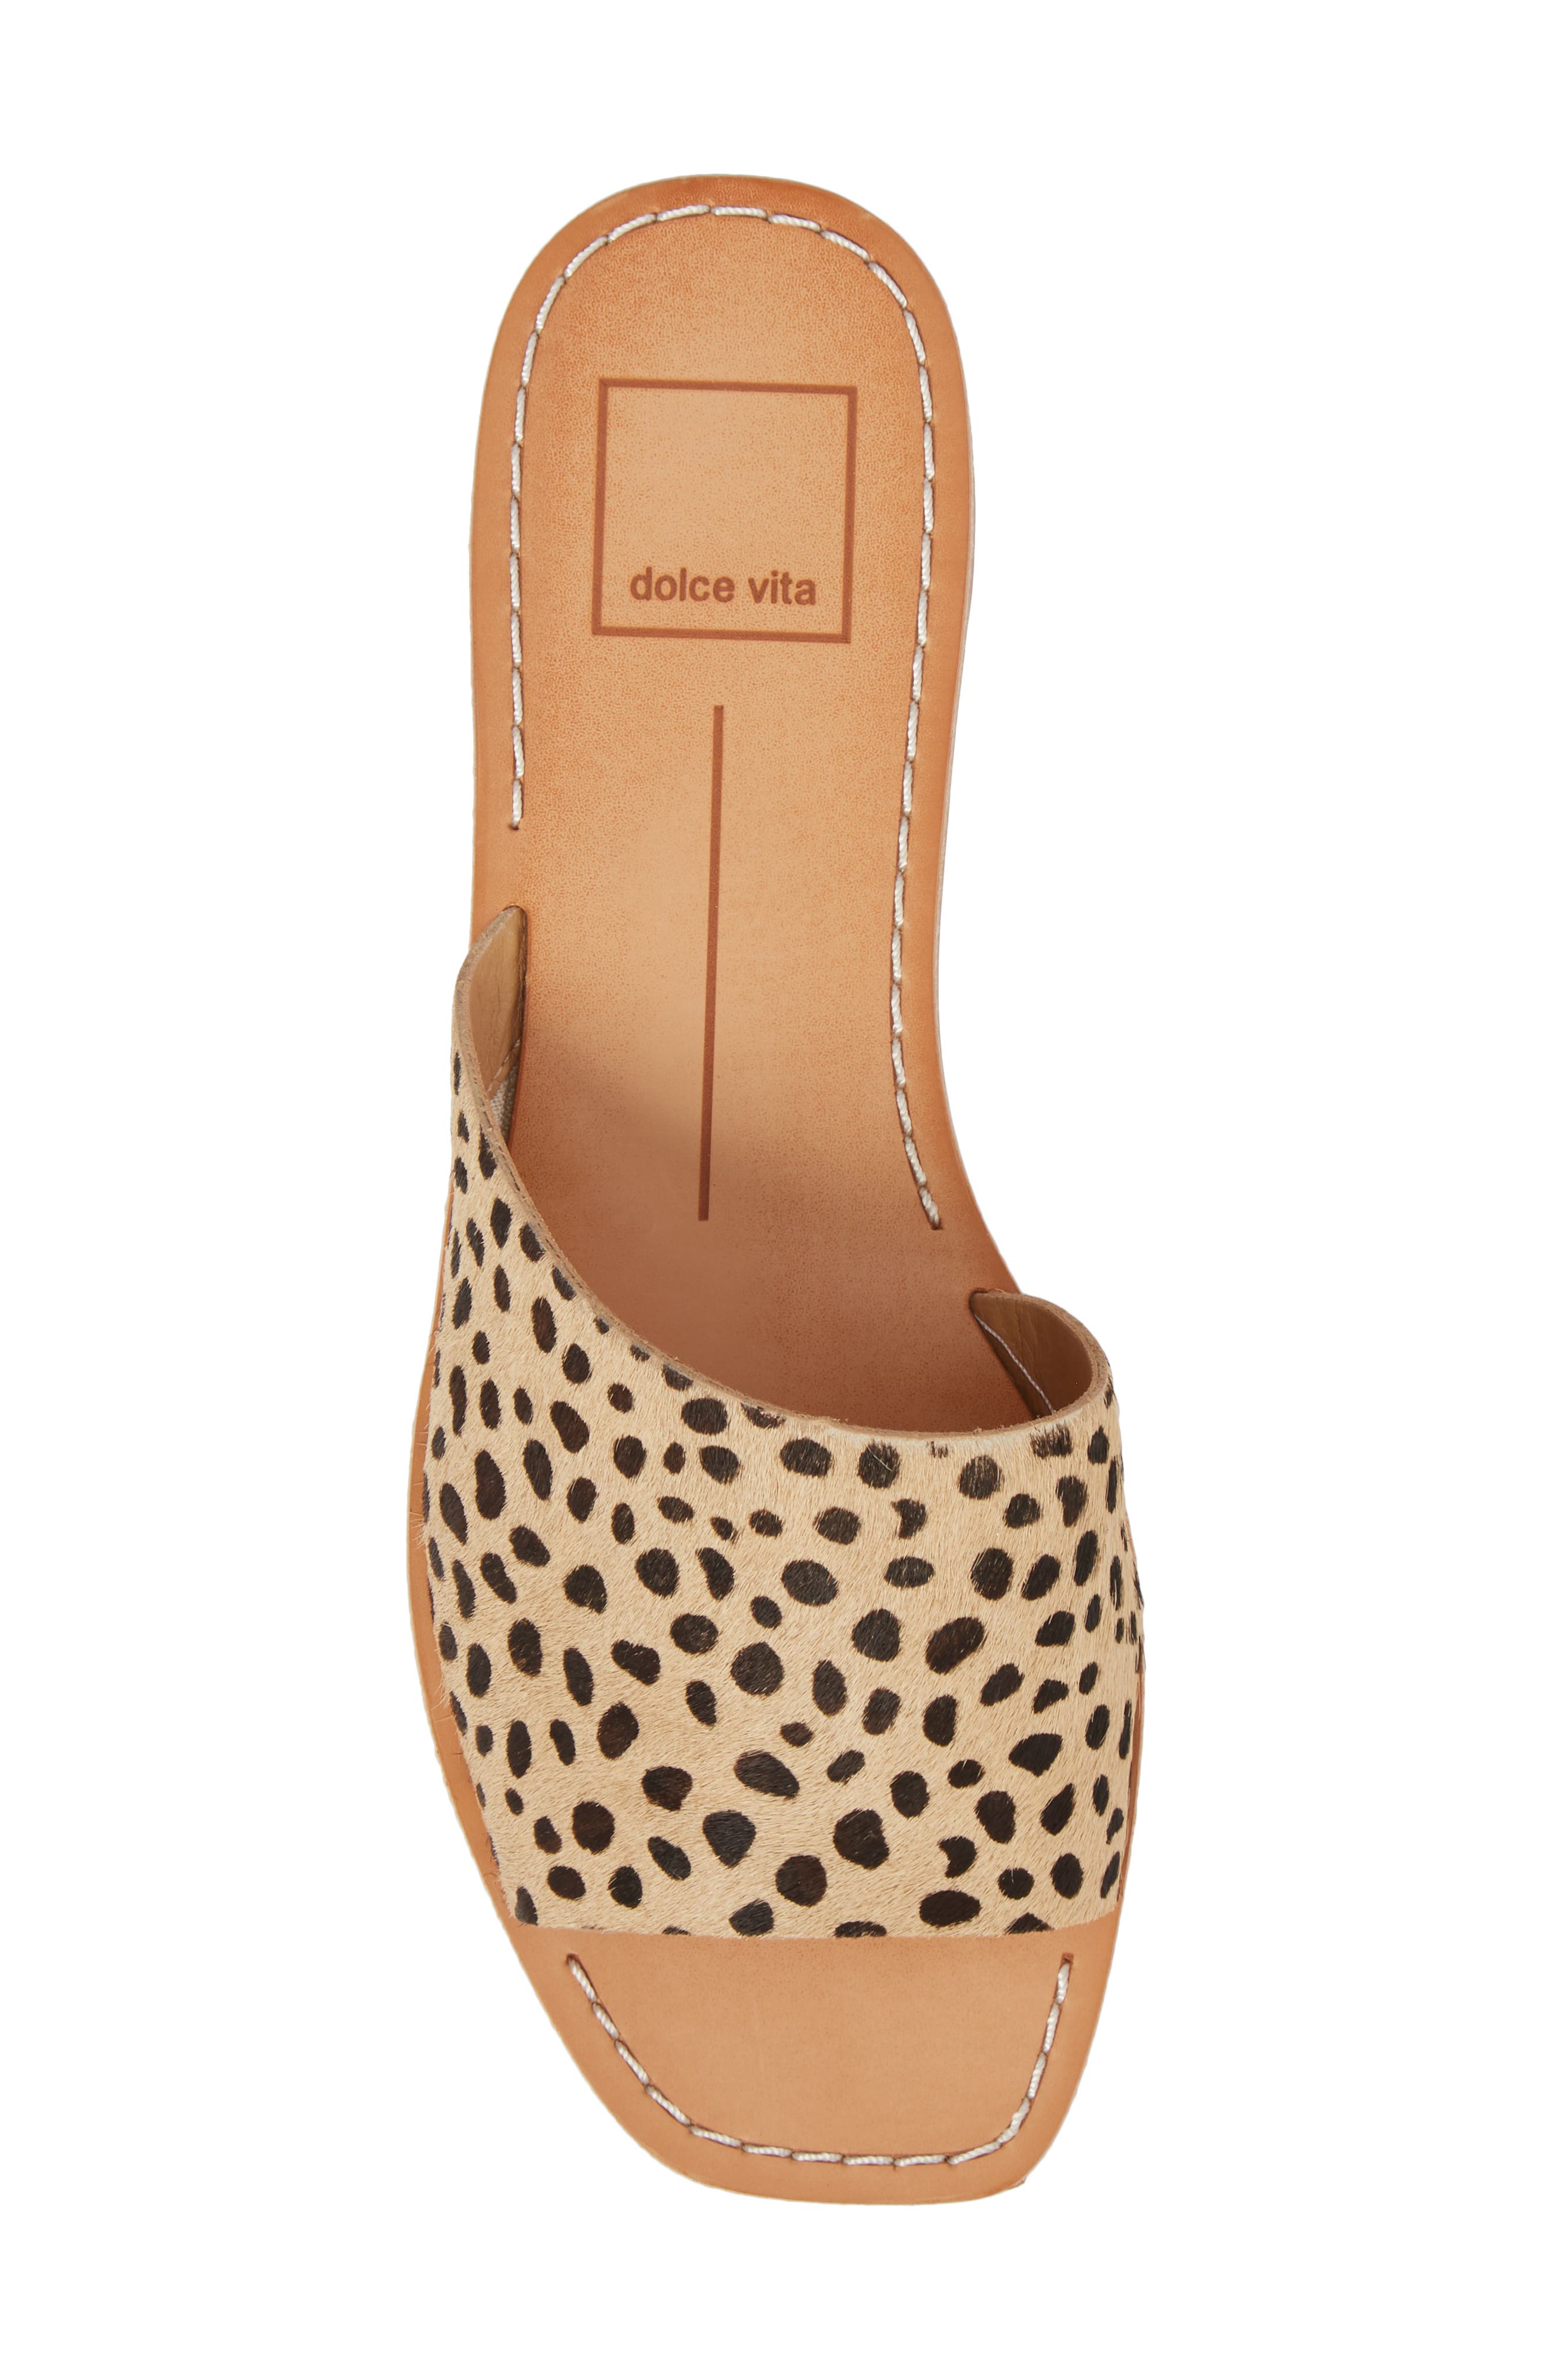 dolce vita cato sandals leopard